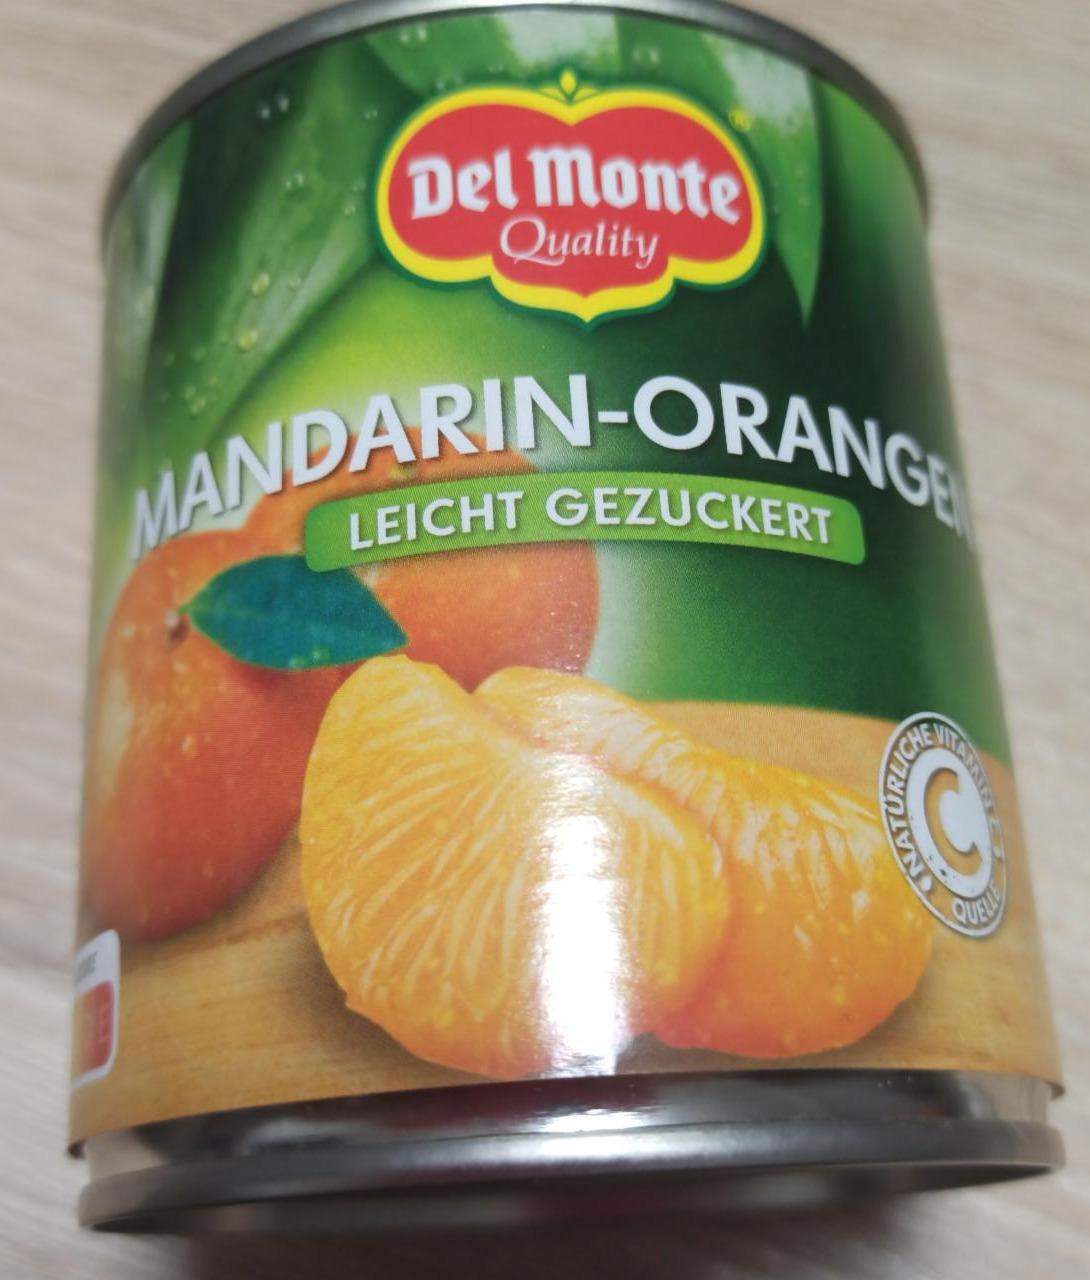 Fotografie - Mandarin-Orangen leicht gezuckert Del Monte Quality